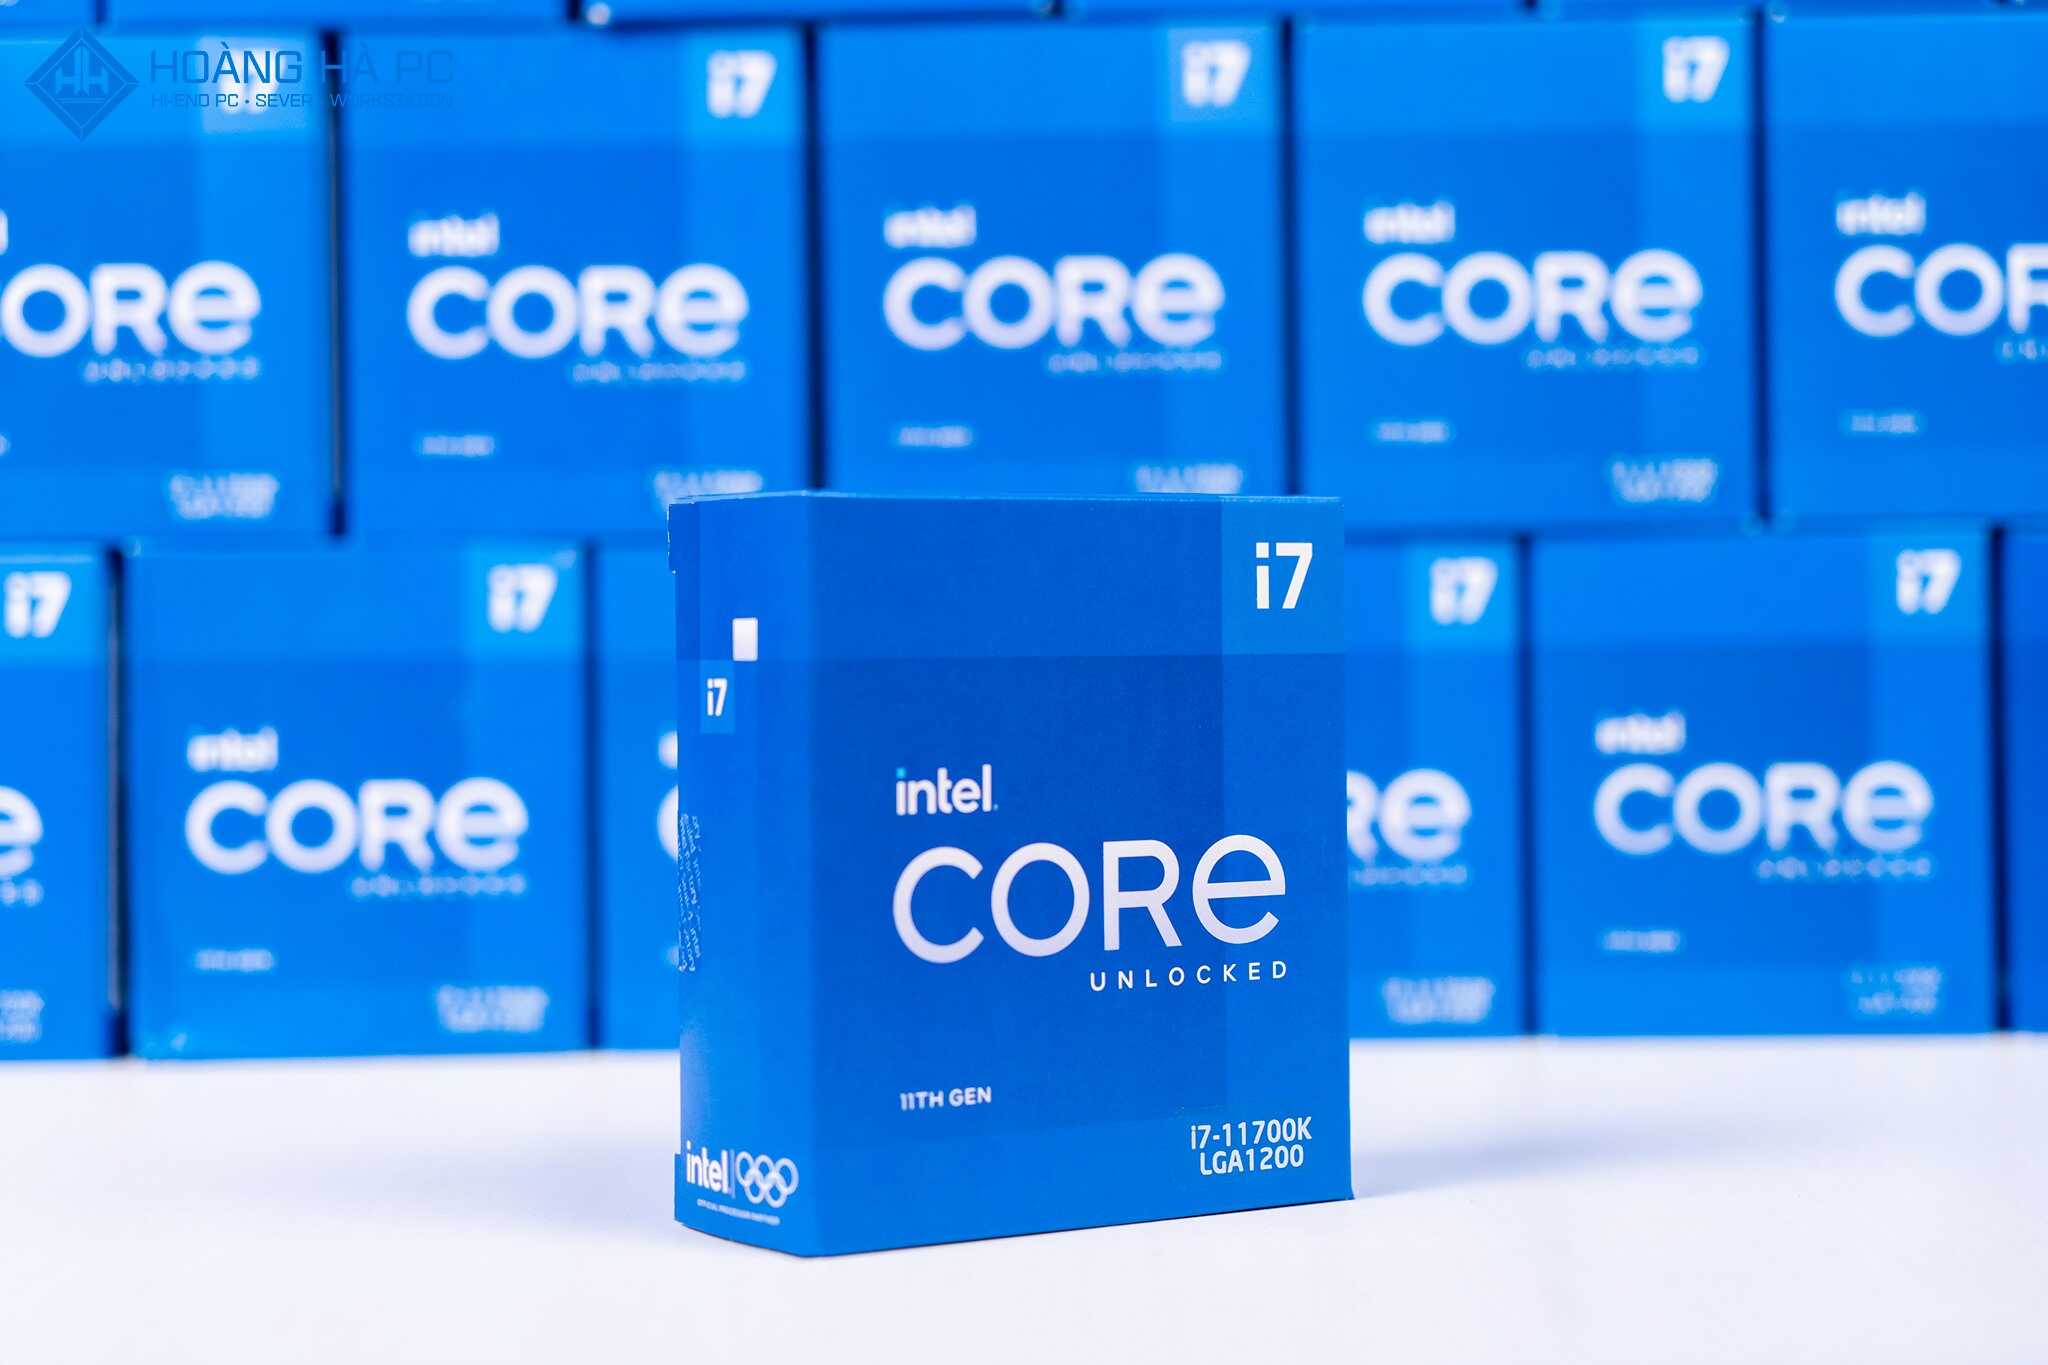 CPU Intel Core i7-11700K (3.60GHz Turbo Up To 5.00GHz, 8 Nhân 16 Luồng, 20M Cache, Rocket Lake)